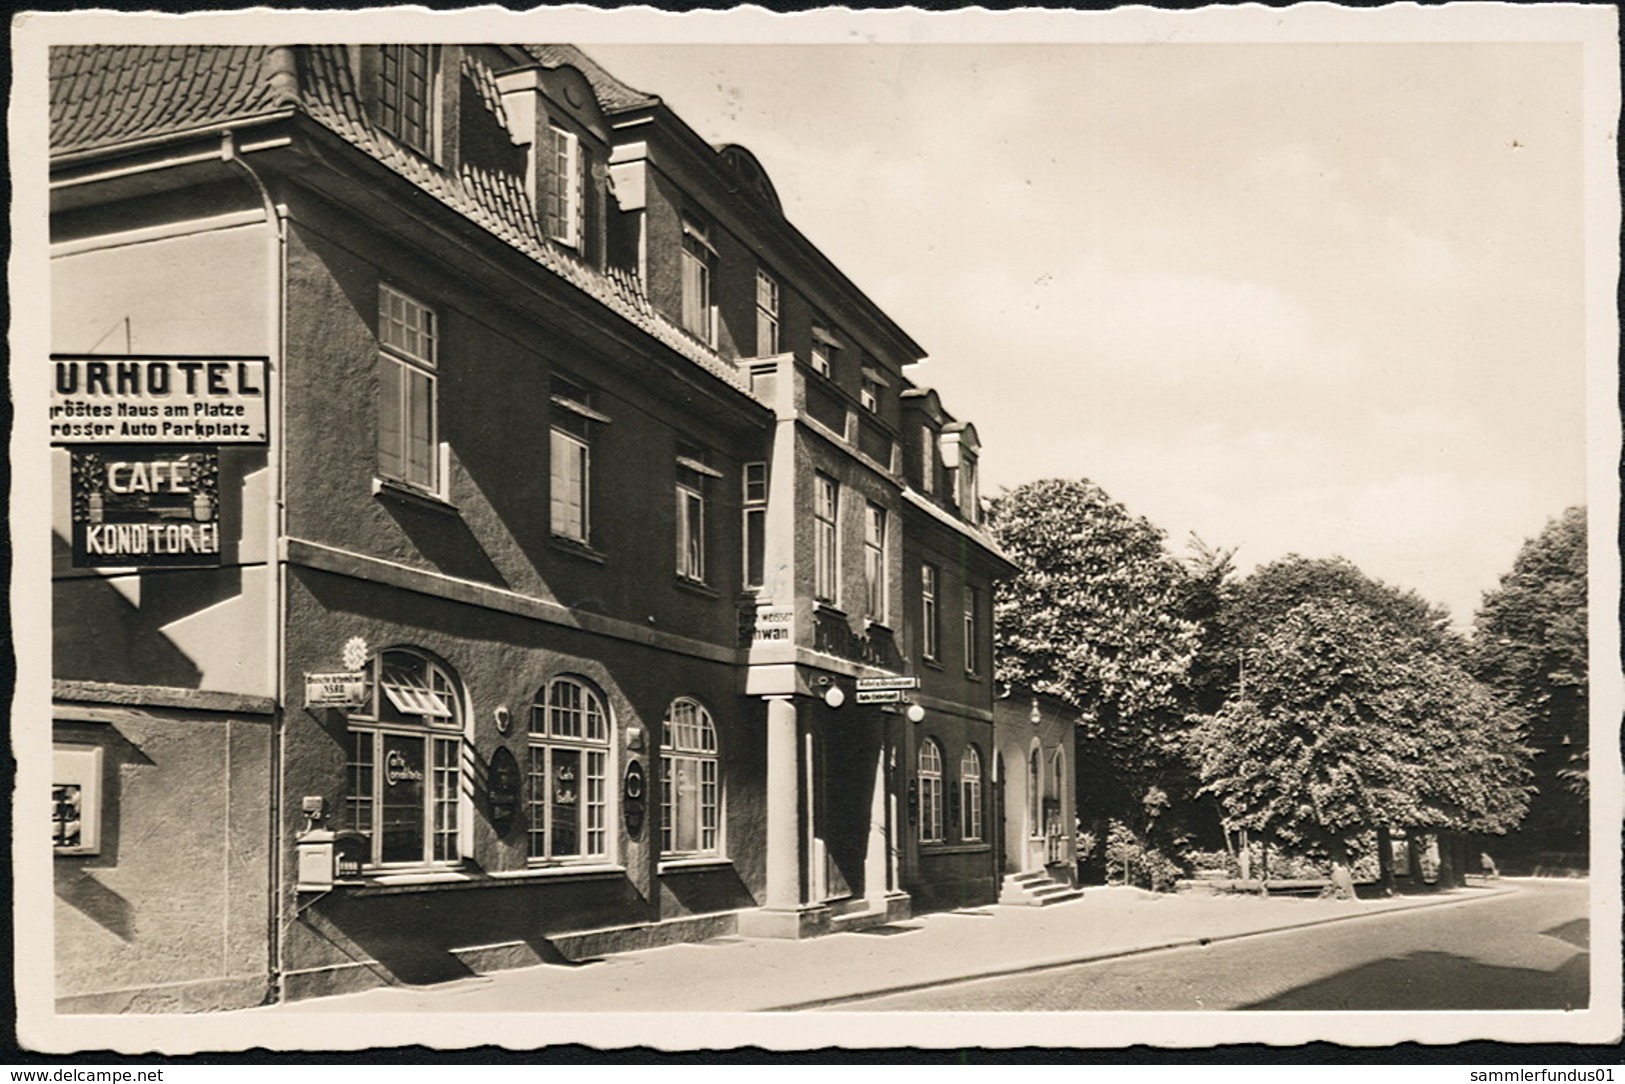 AK/CP Lauenburg Elbe  Kurhotel  Strasse    Gel/circ. 1939   Erhaltung/Cond. 2  Nr. 01019 - Lauenburg